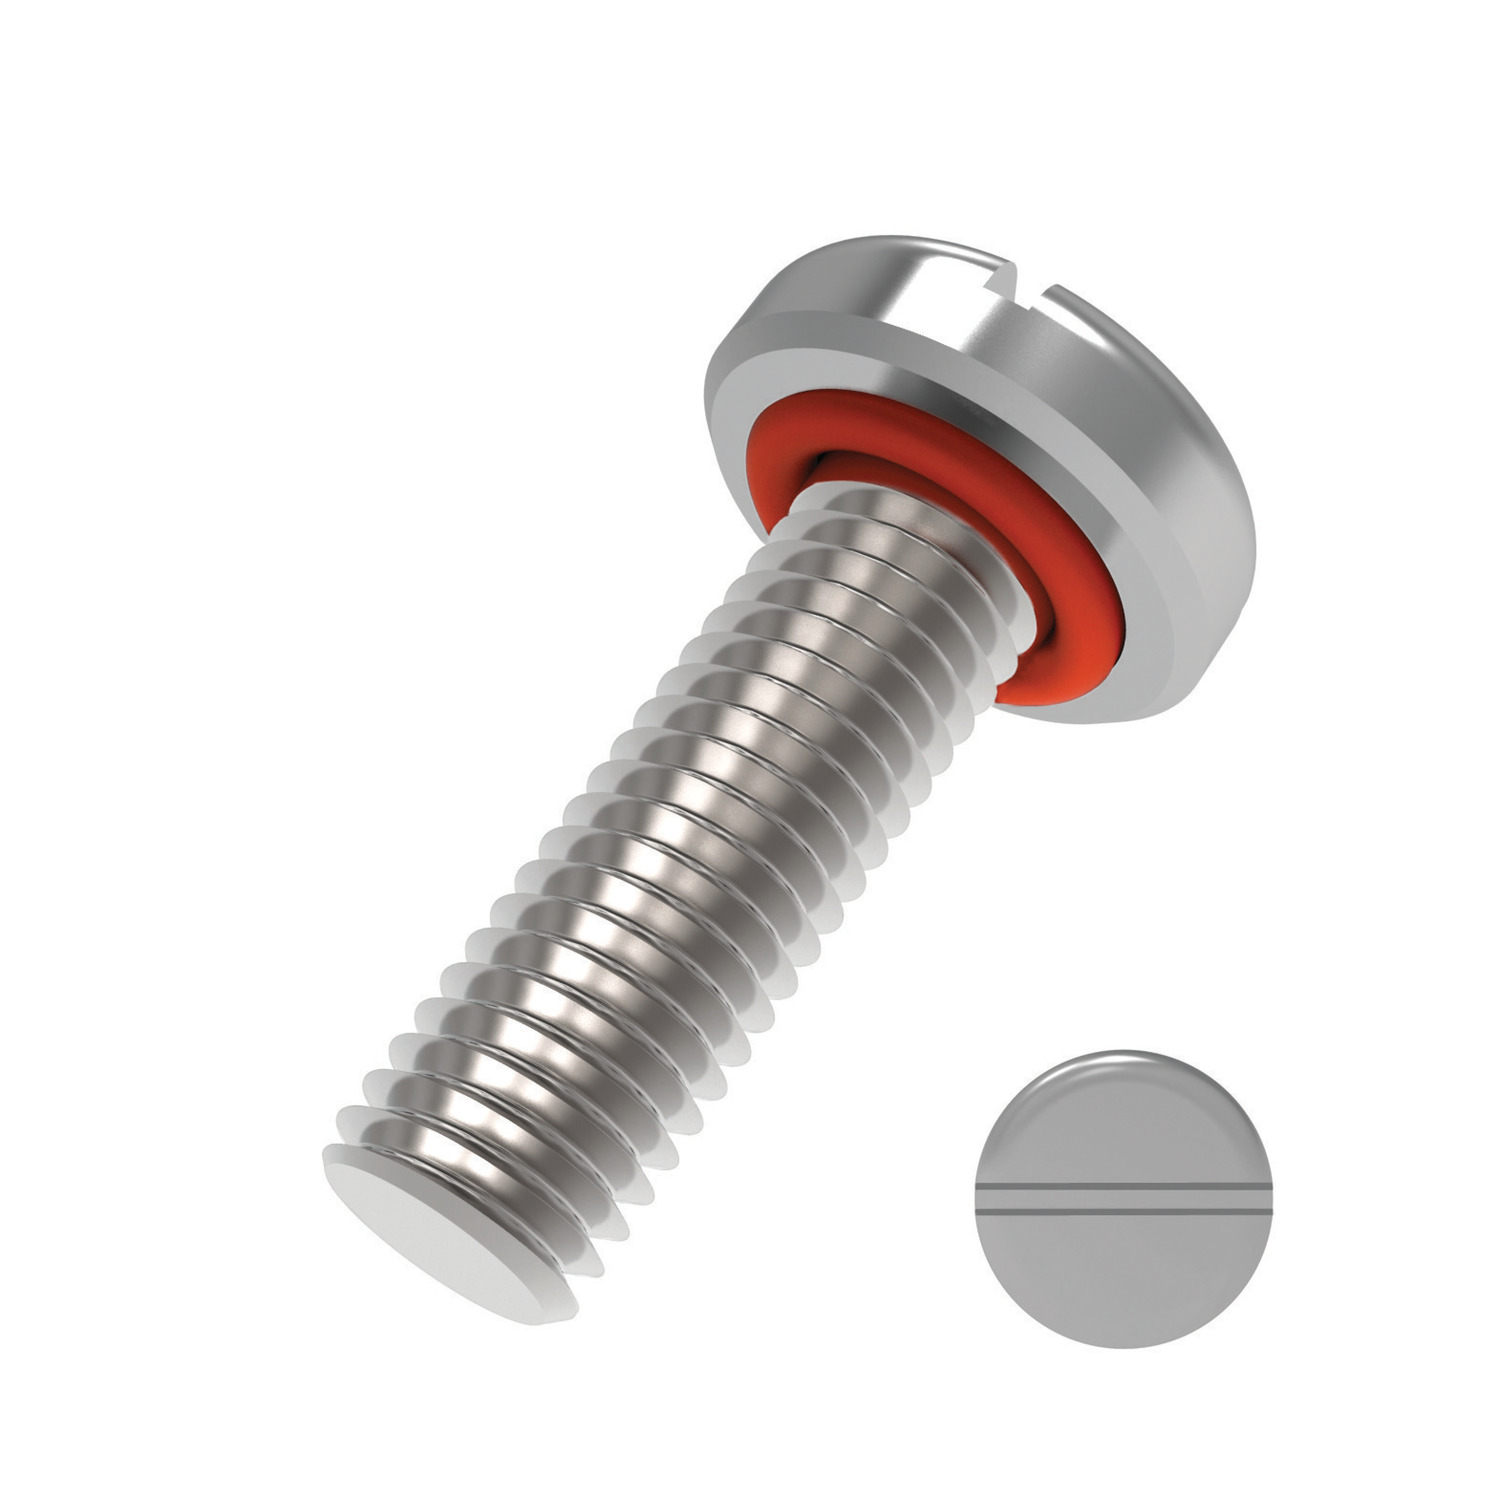 P0171.I02-025-SI Inch slot pan seal screw #2x1/4in A2 s/s 